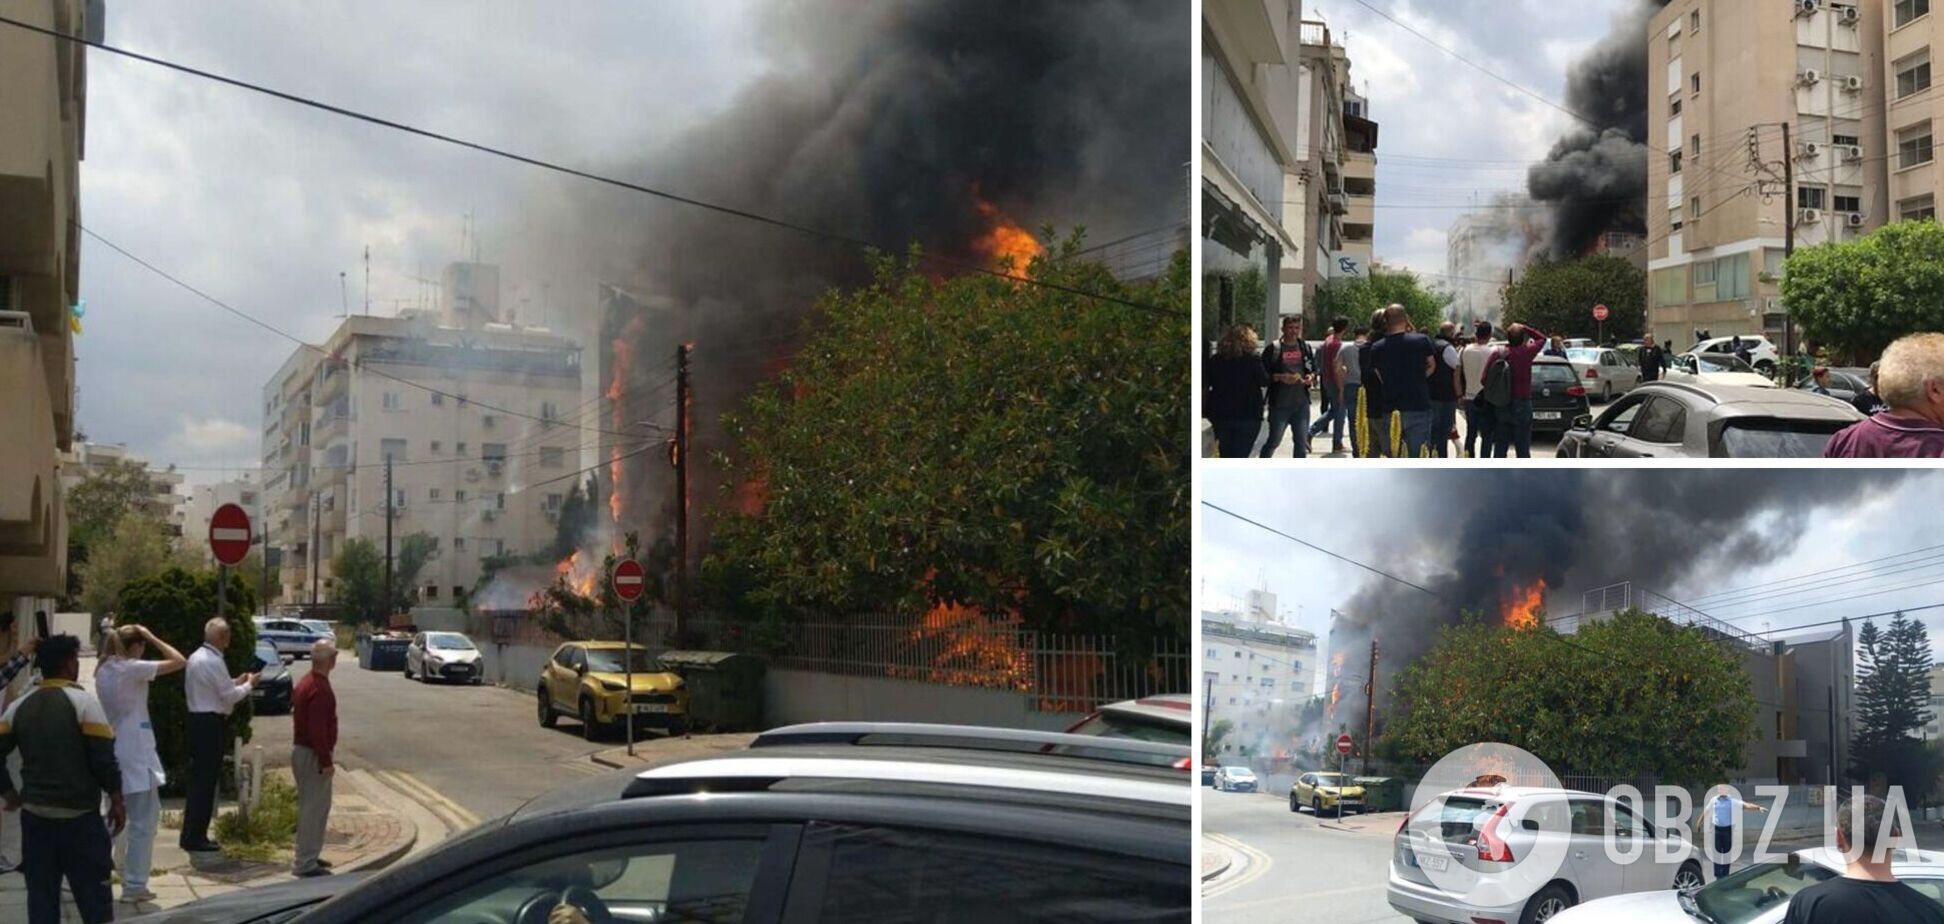 'А где у нас еще не горело?' Россияне устроили истерику из-за пожара в своем центре на Кипре и обвинили украинцев